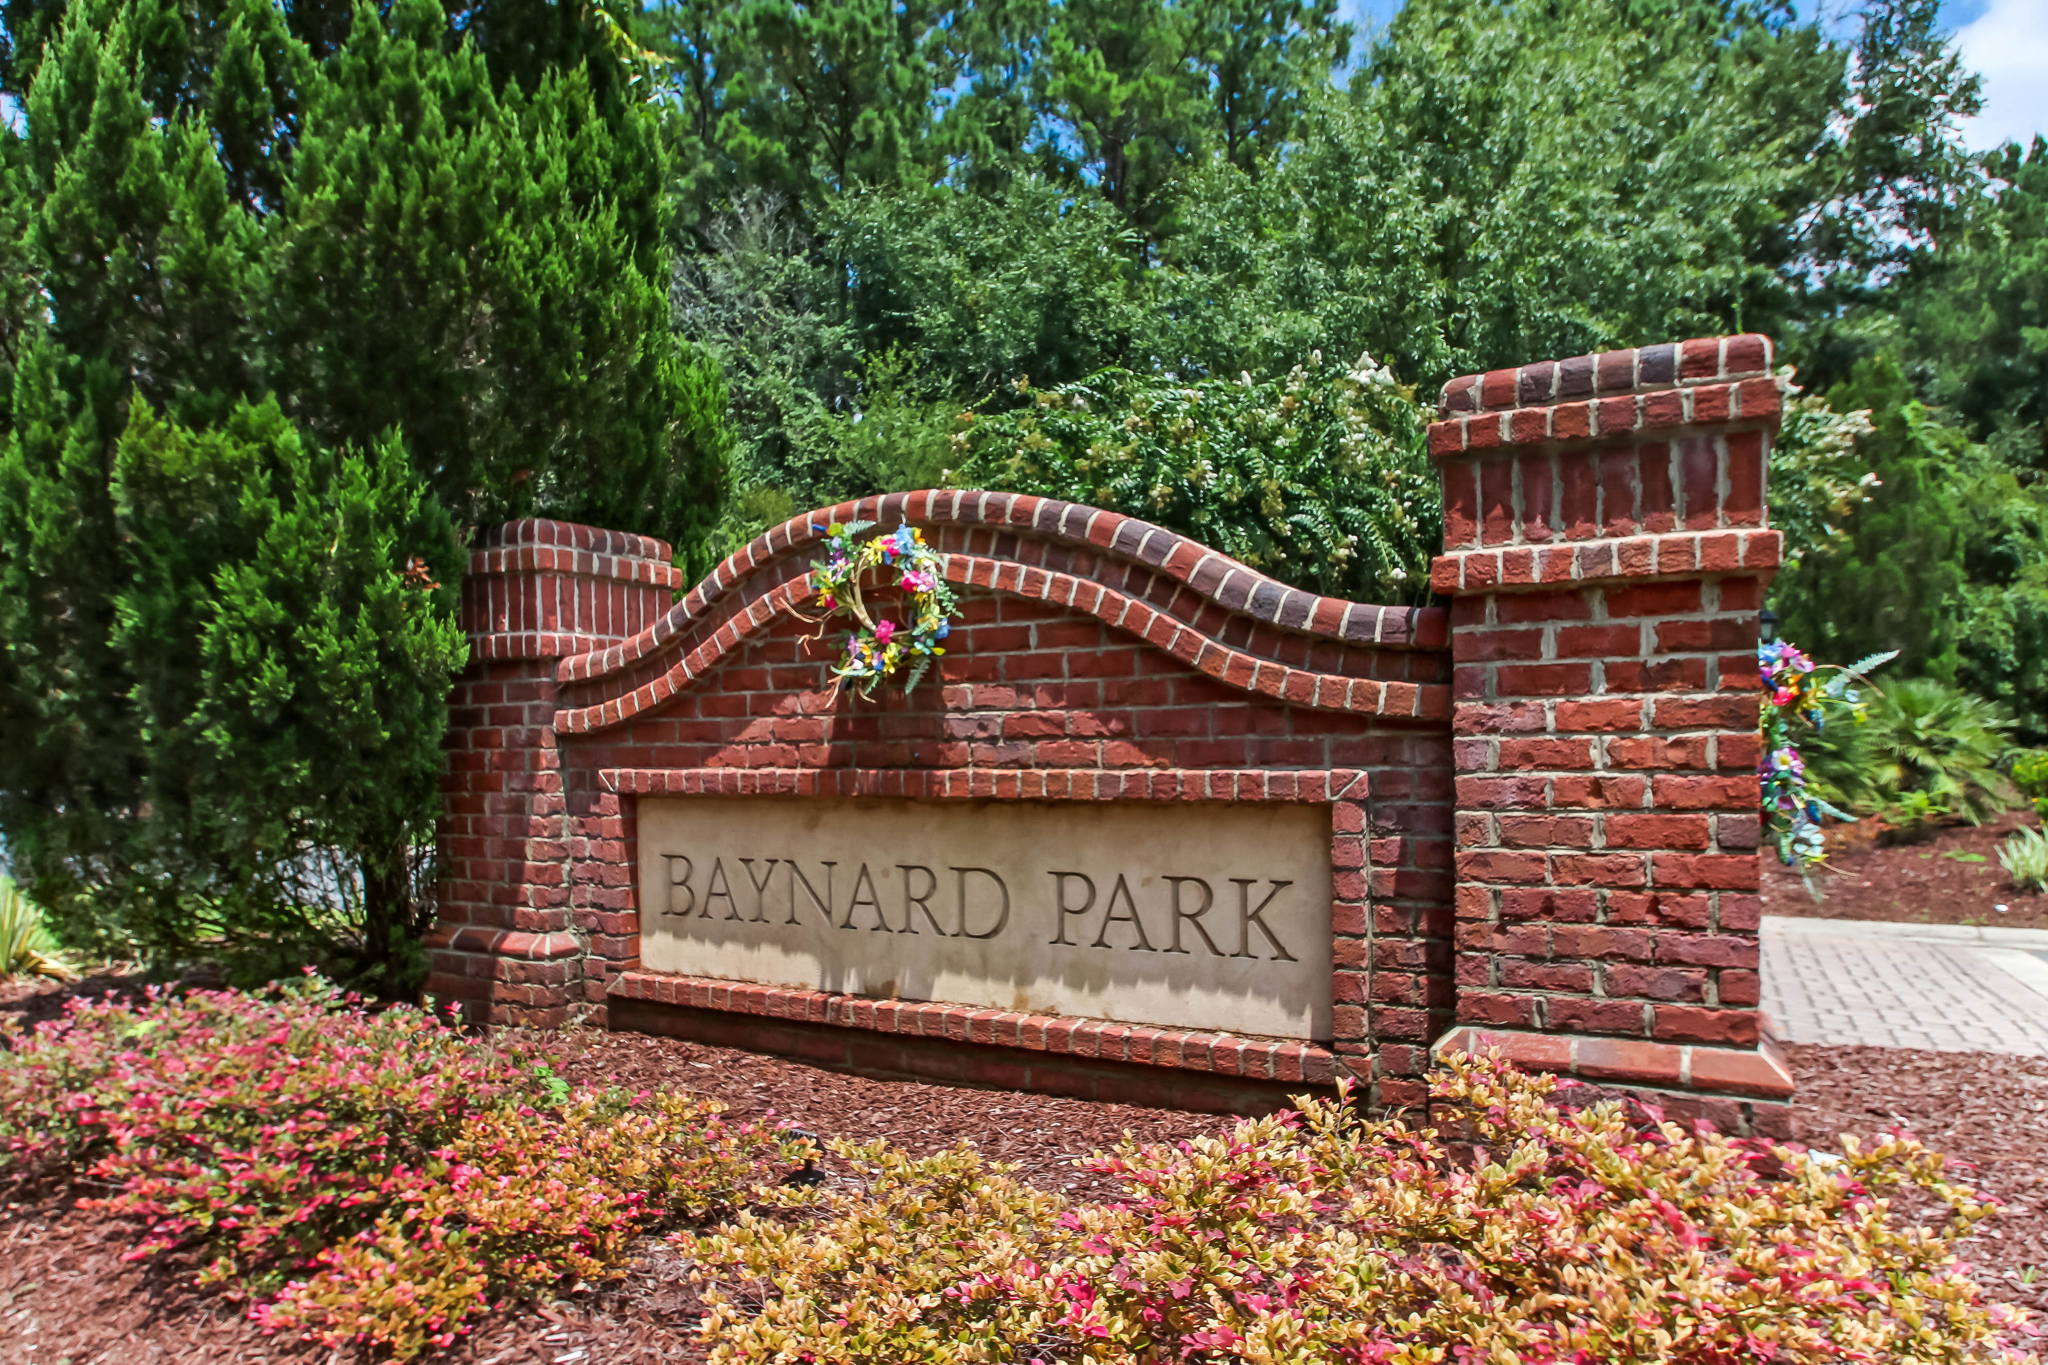 Baynard Park